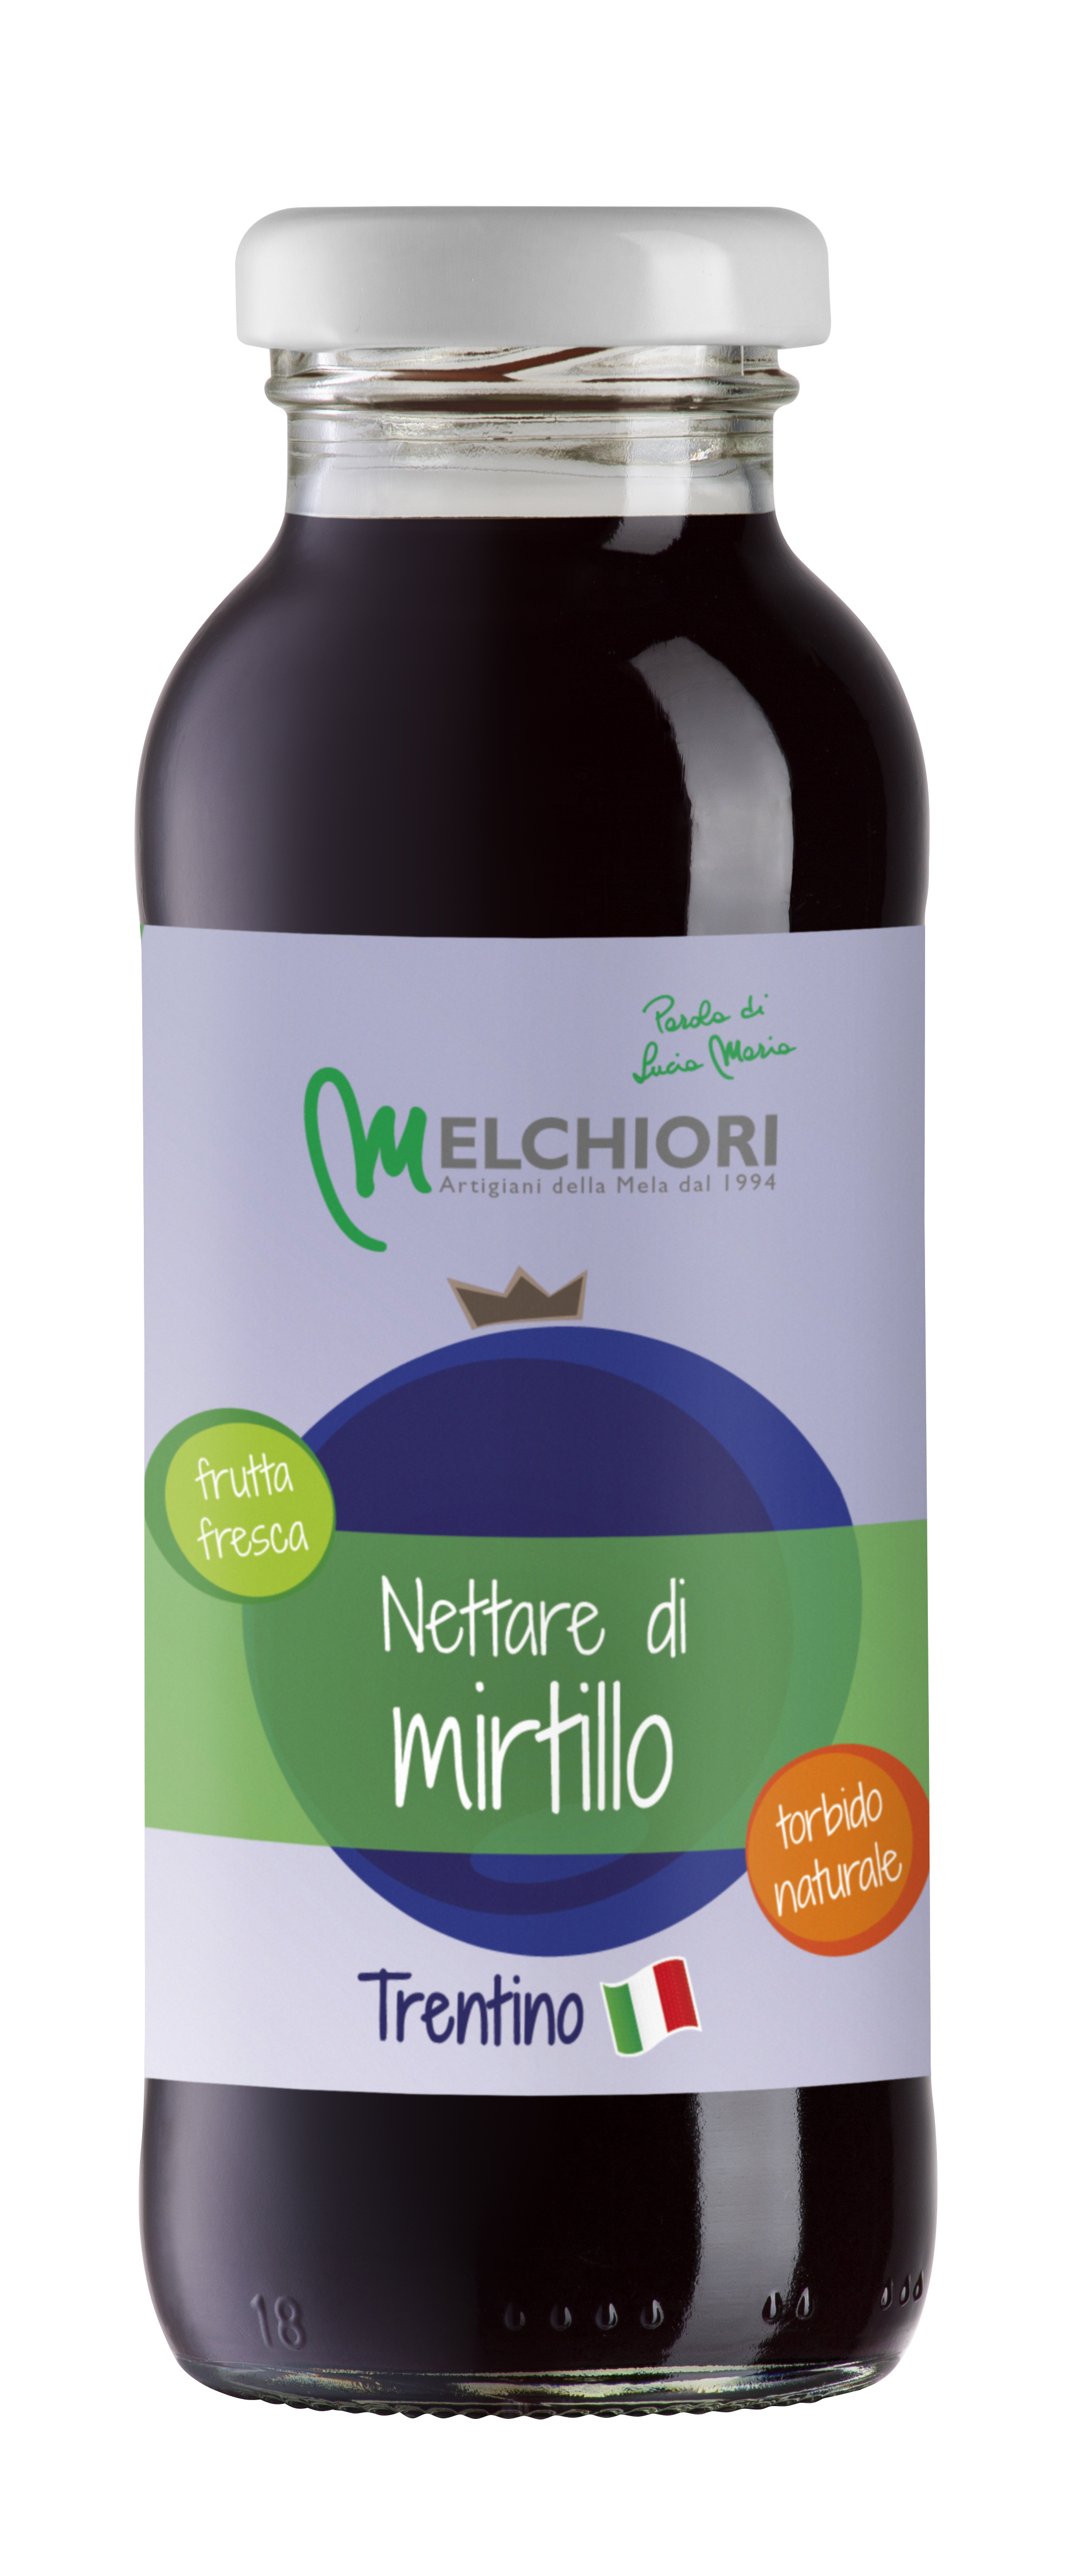 Nettare-Di-Mirtillo-Torbido-Naturale-Trentino